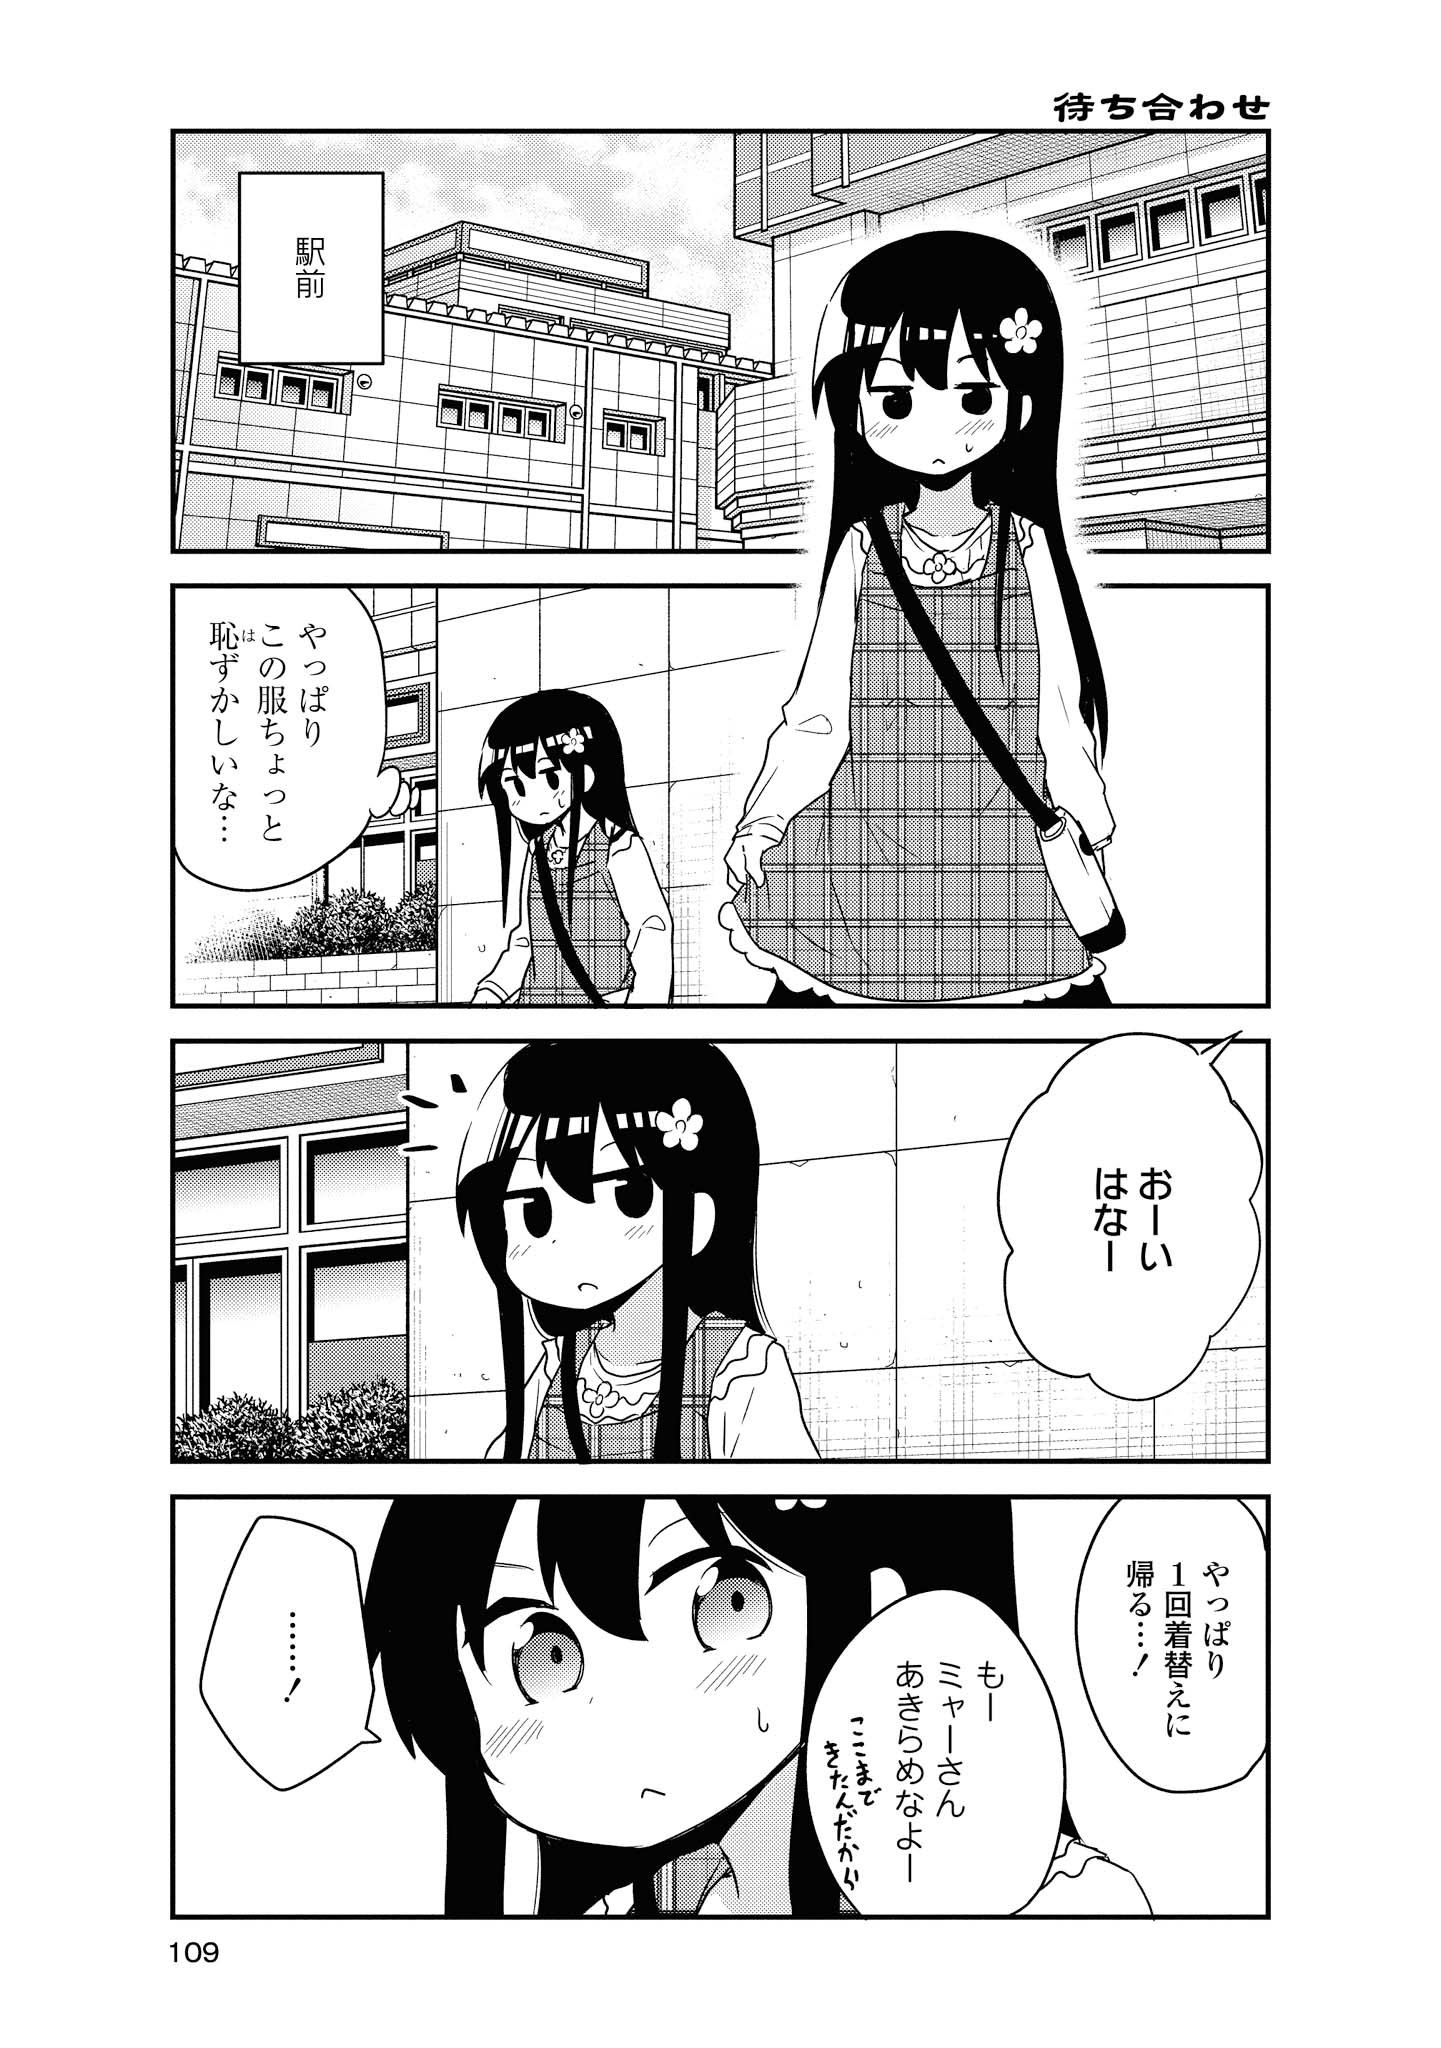 Watashi ni Tenshi ga Maiorita! - Chapter 59 - Page 1